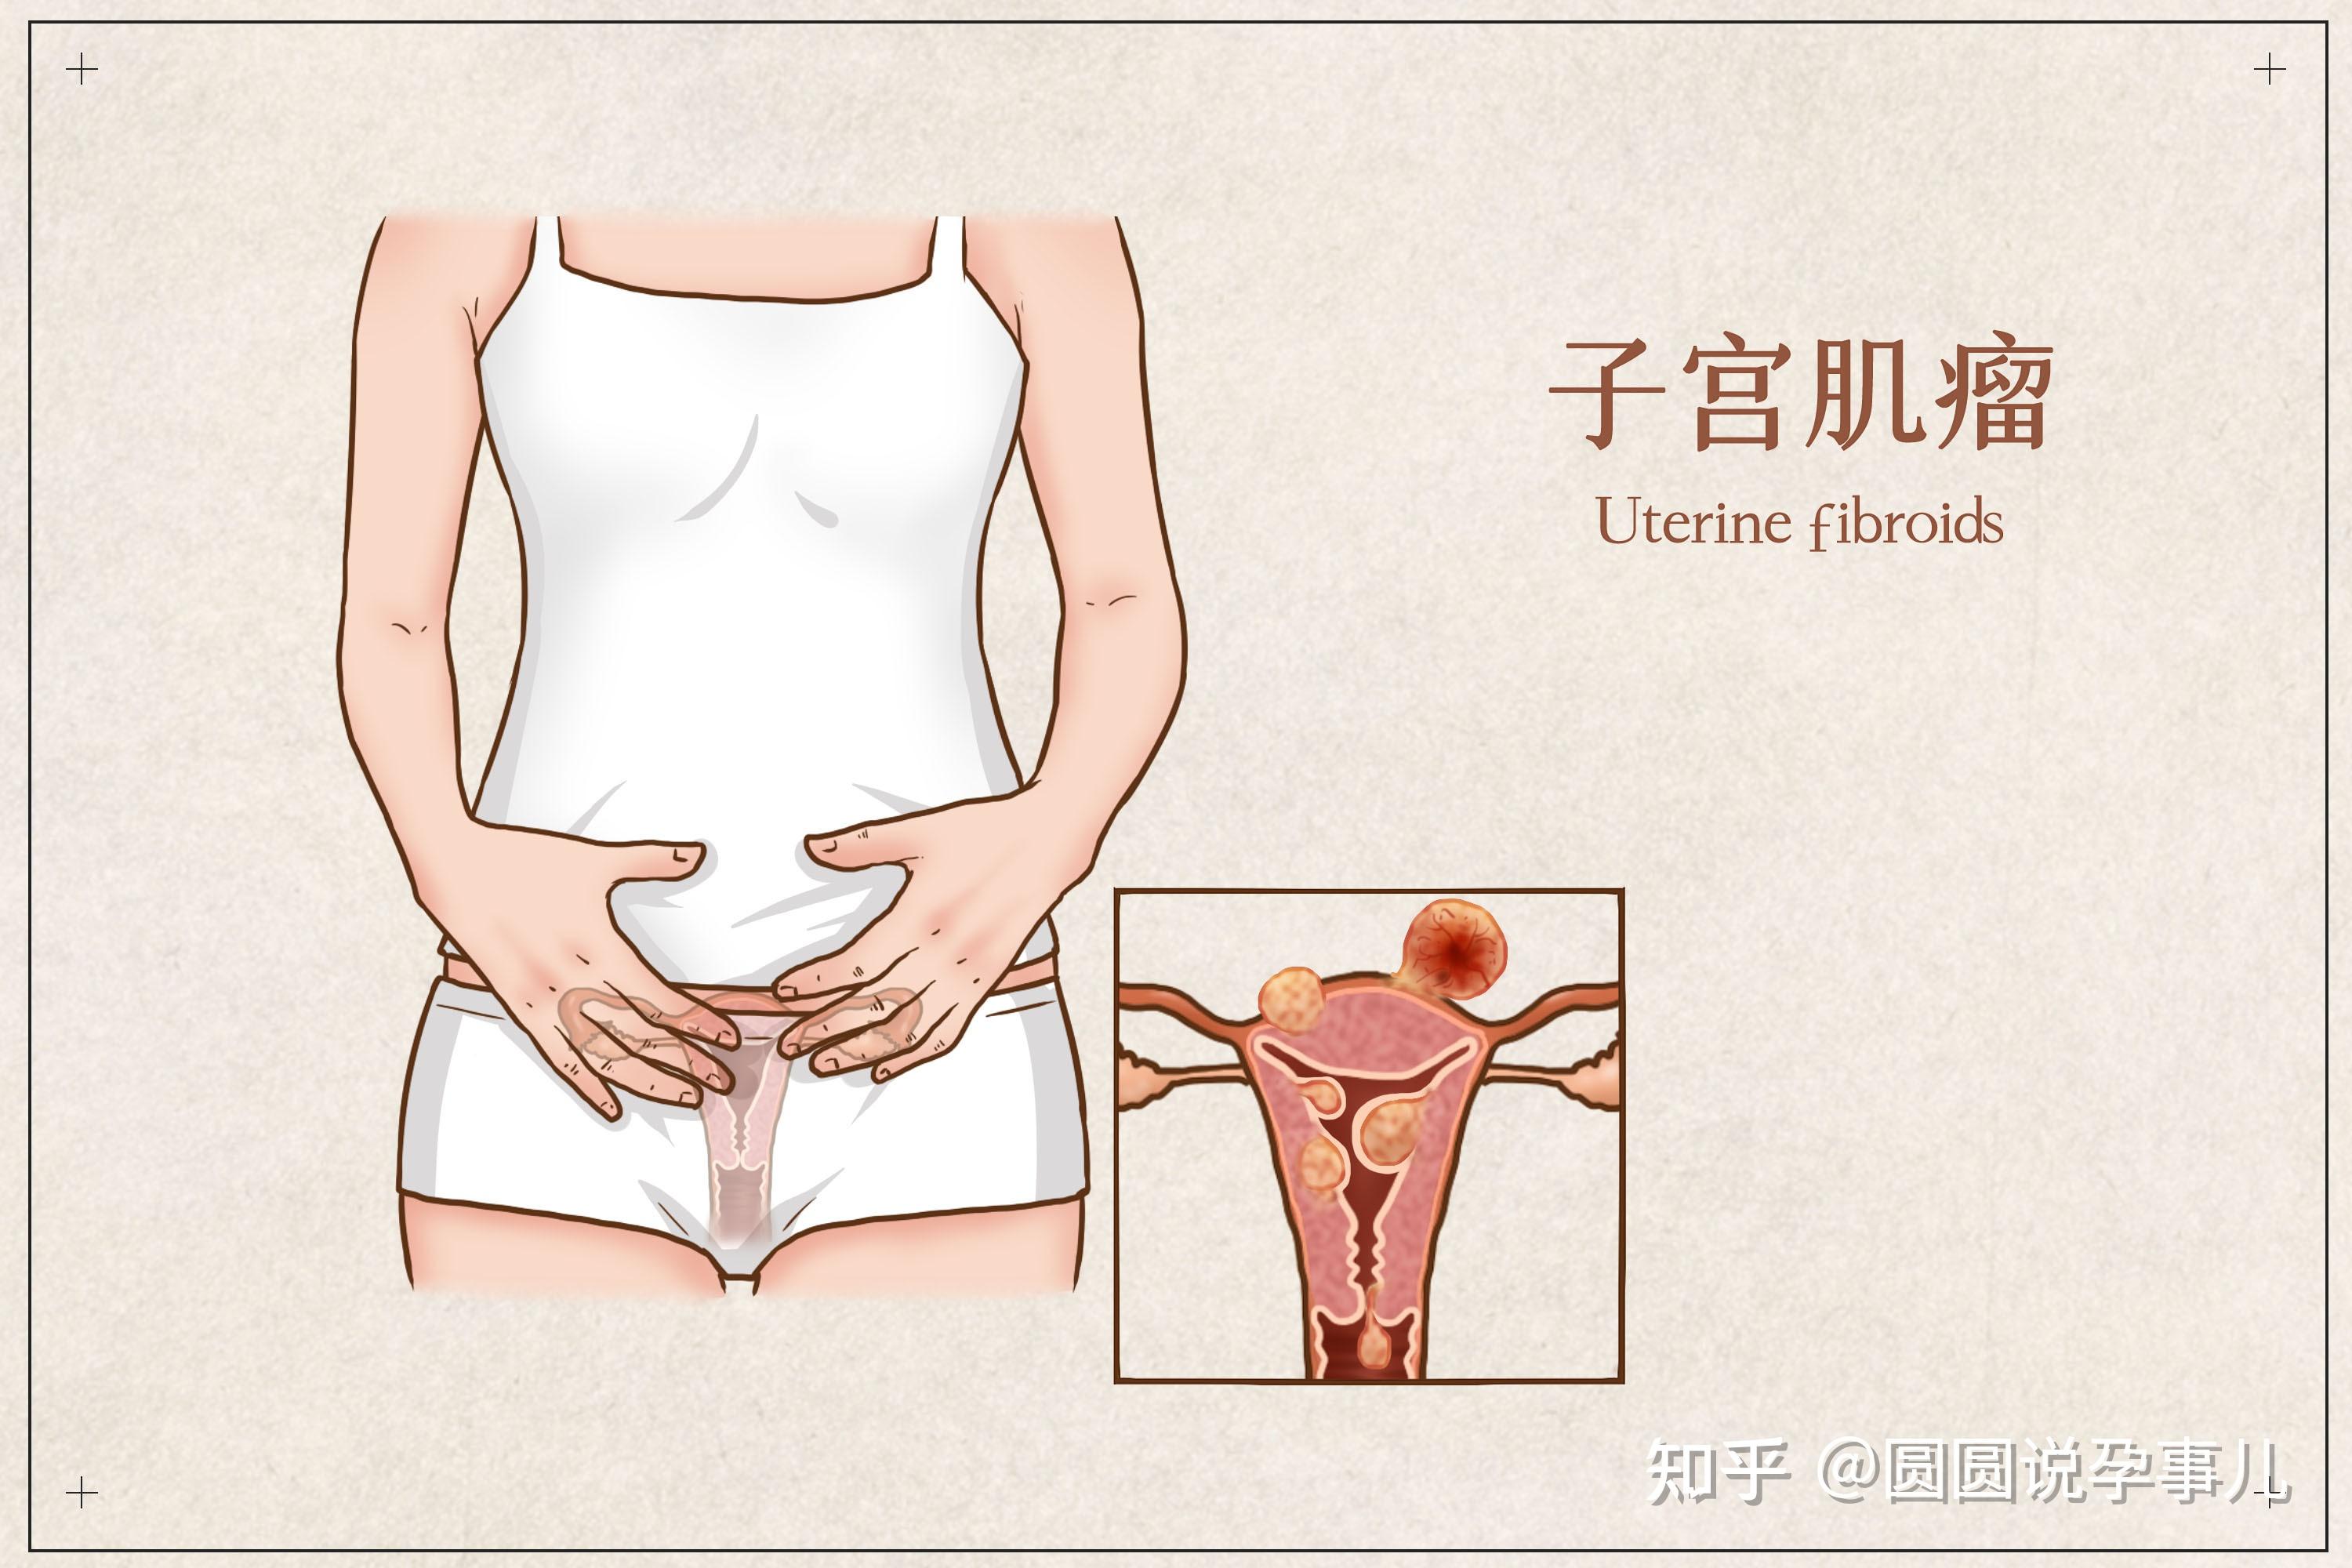 女性宫颈萎缩的图片图片